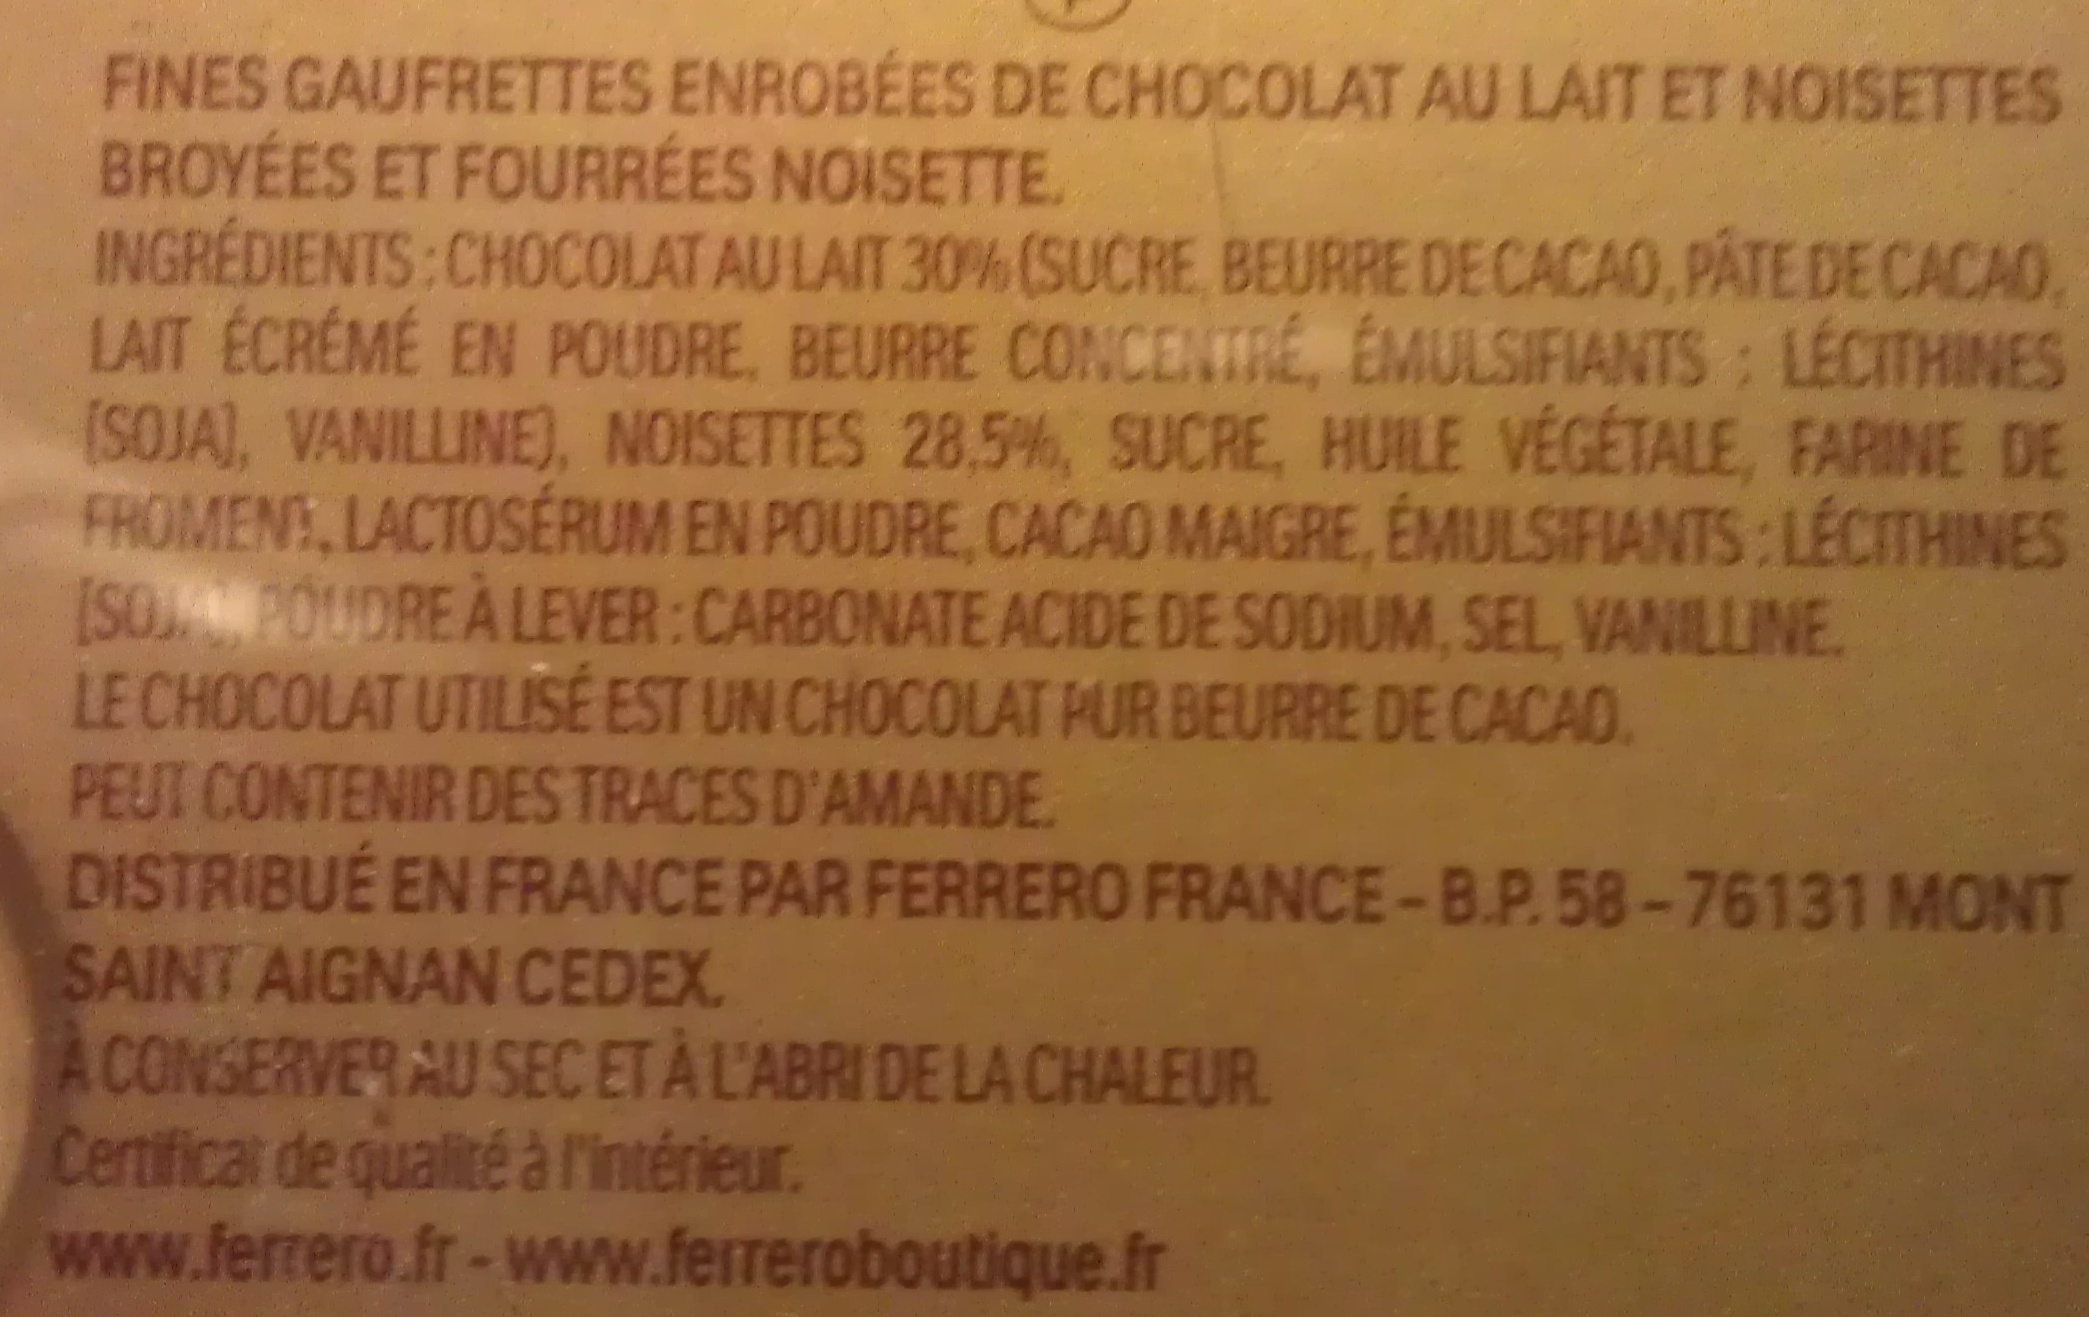 Ferrero Rocher - Fines gaufrettes enrobées de chocolat - Ingrédients - fr